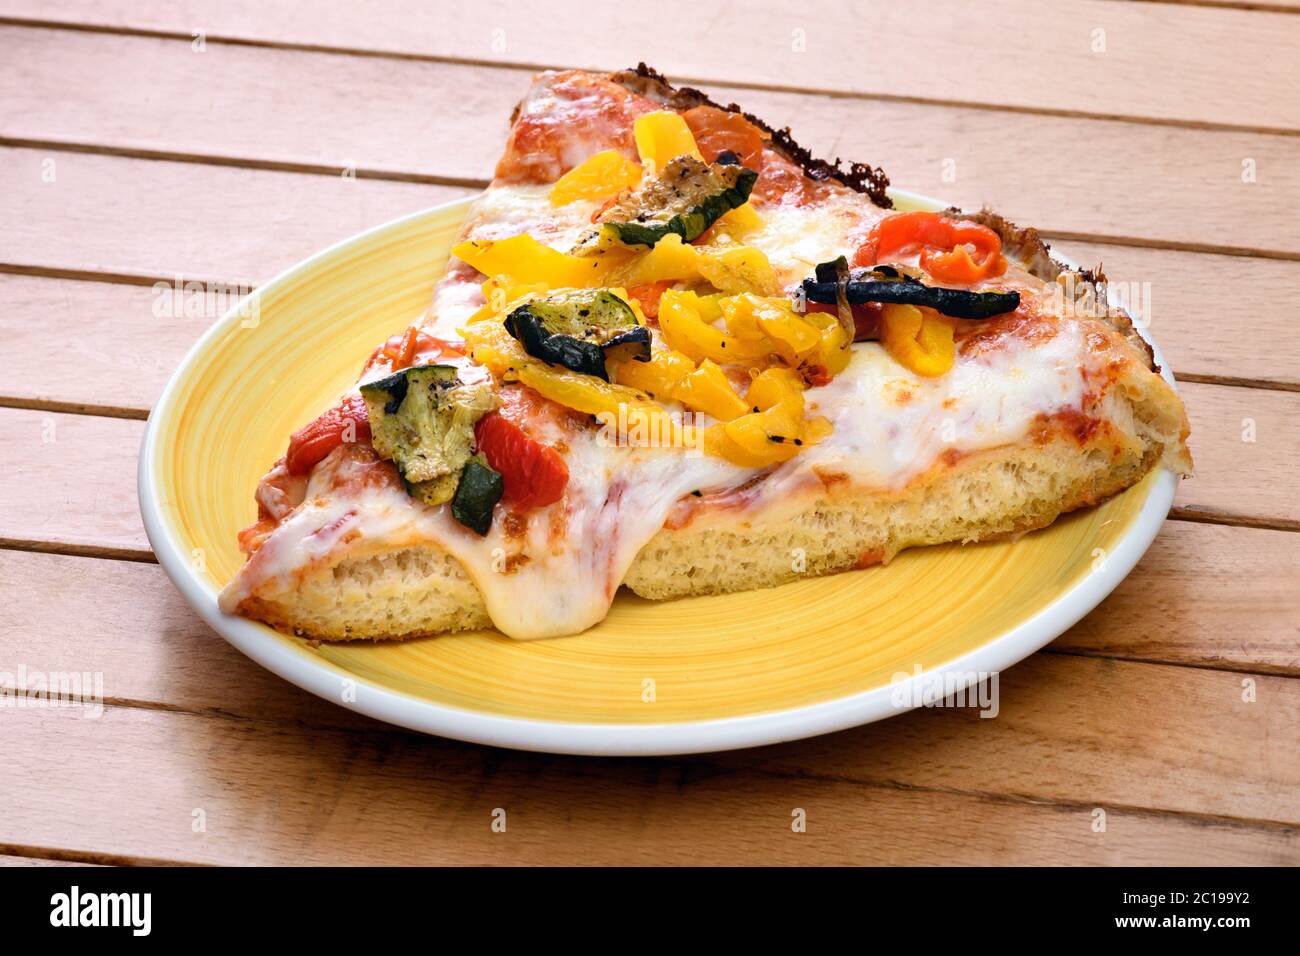 Ein Stück traditionelle italienische Pizza mit gegrilltem Gemüse Belag auf geschmolzenem Mozzarella-Käse serviert auf einem gelben Teller auf einem Holztisch Stockfoto